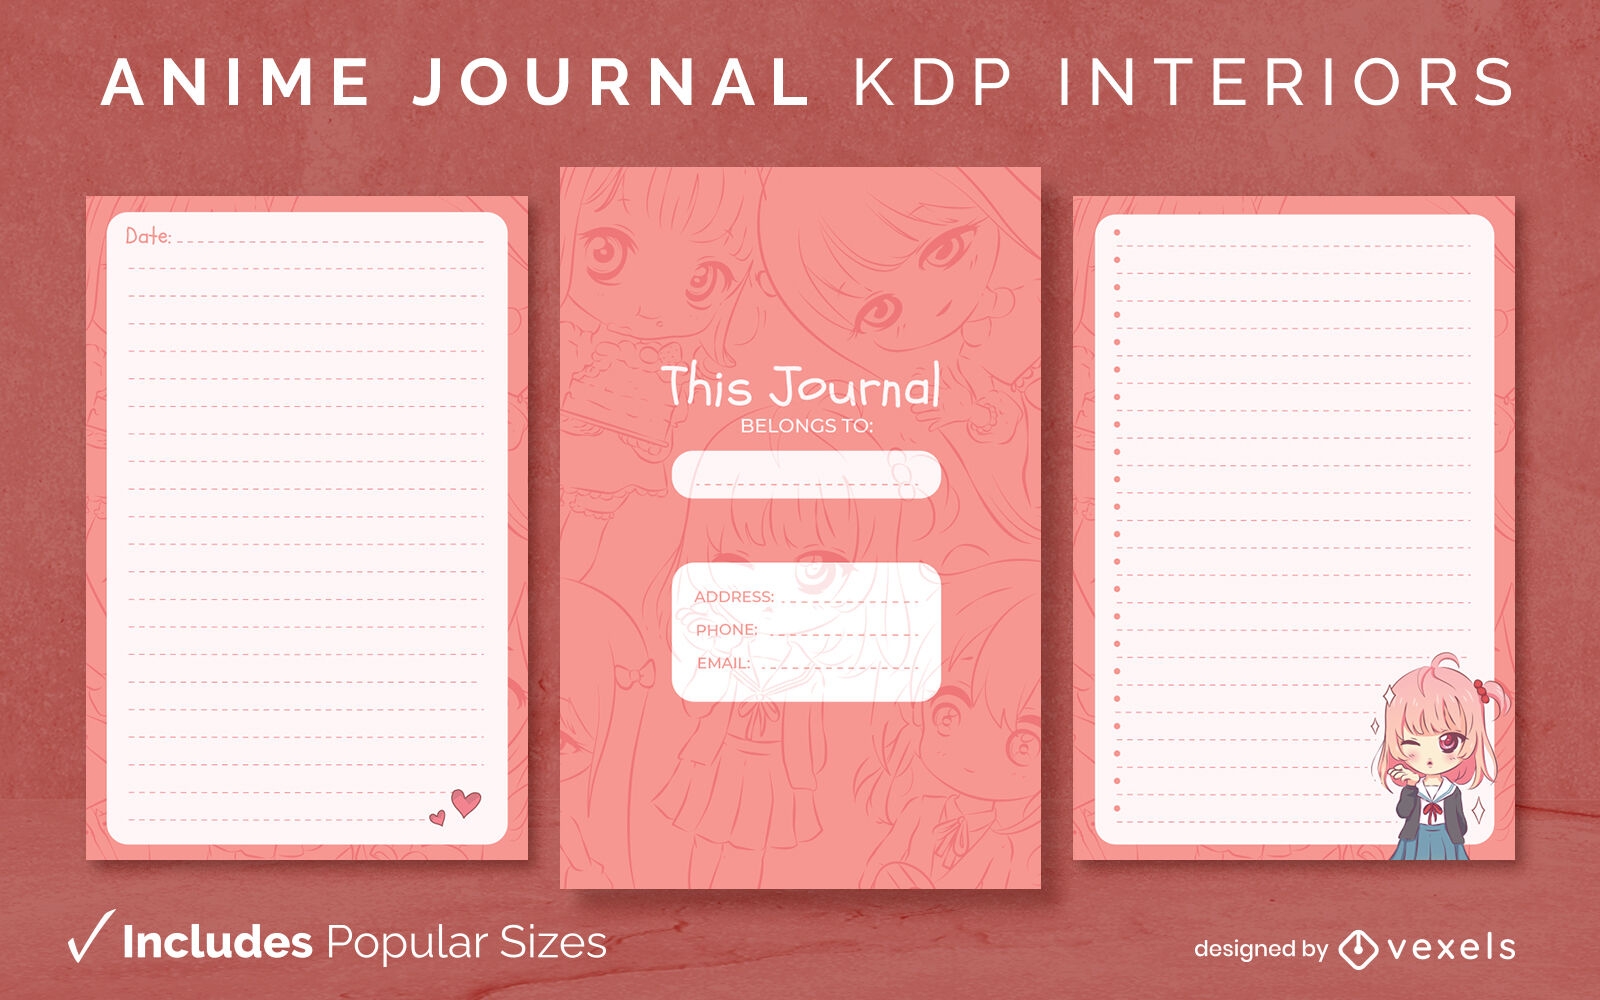 Anime girl journal design template KDP